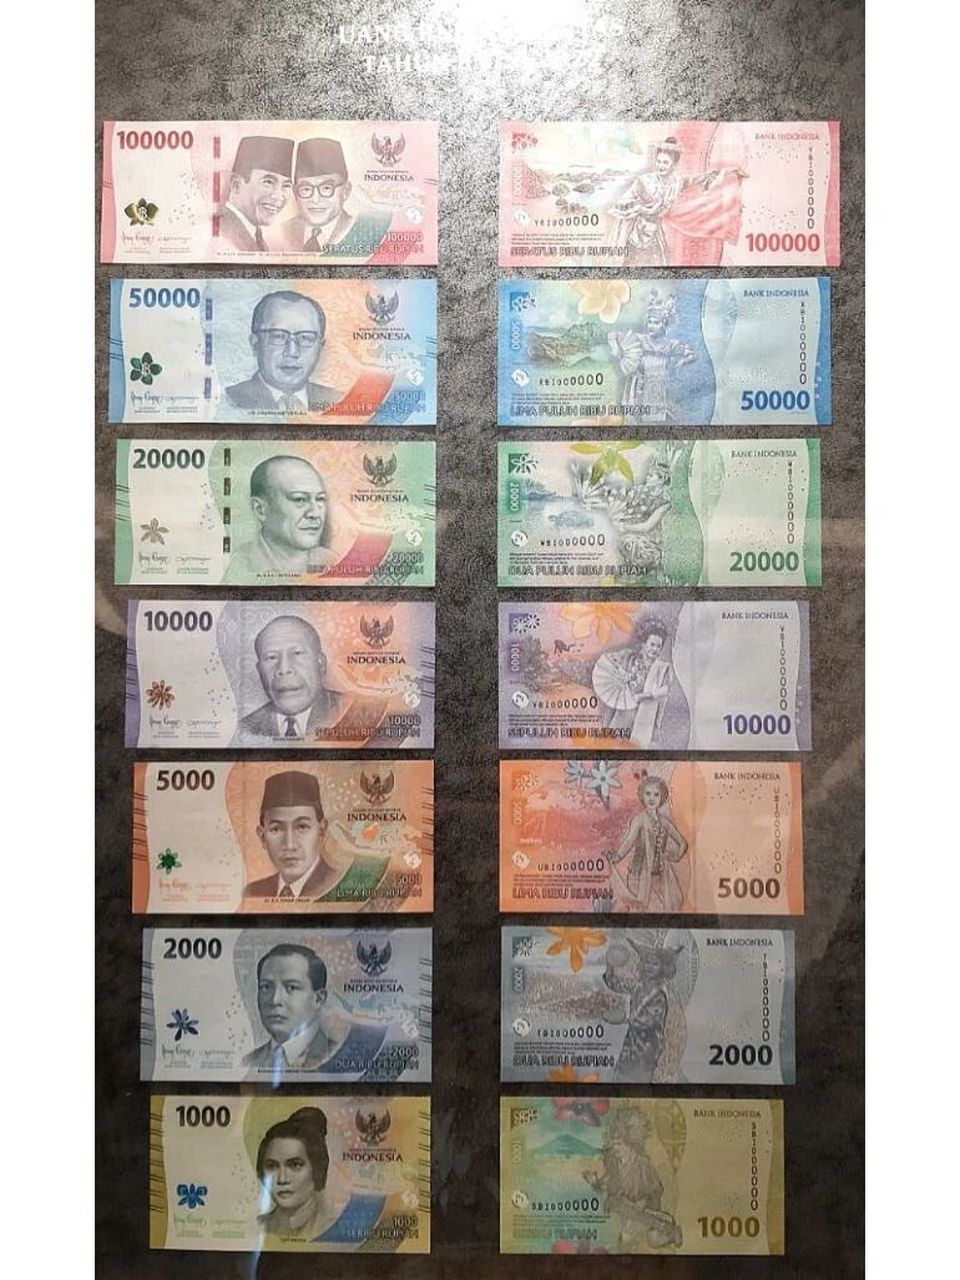 100印尼盾图片